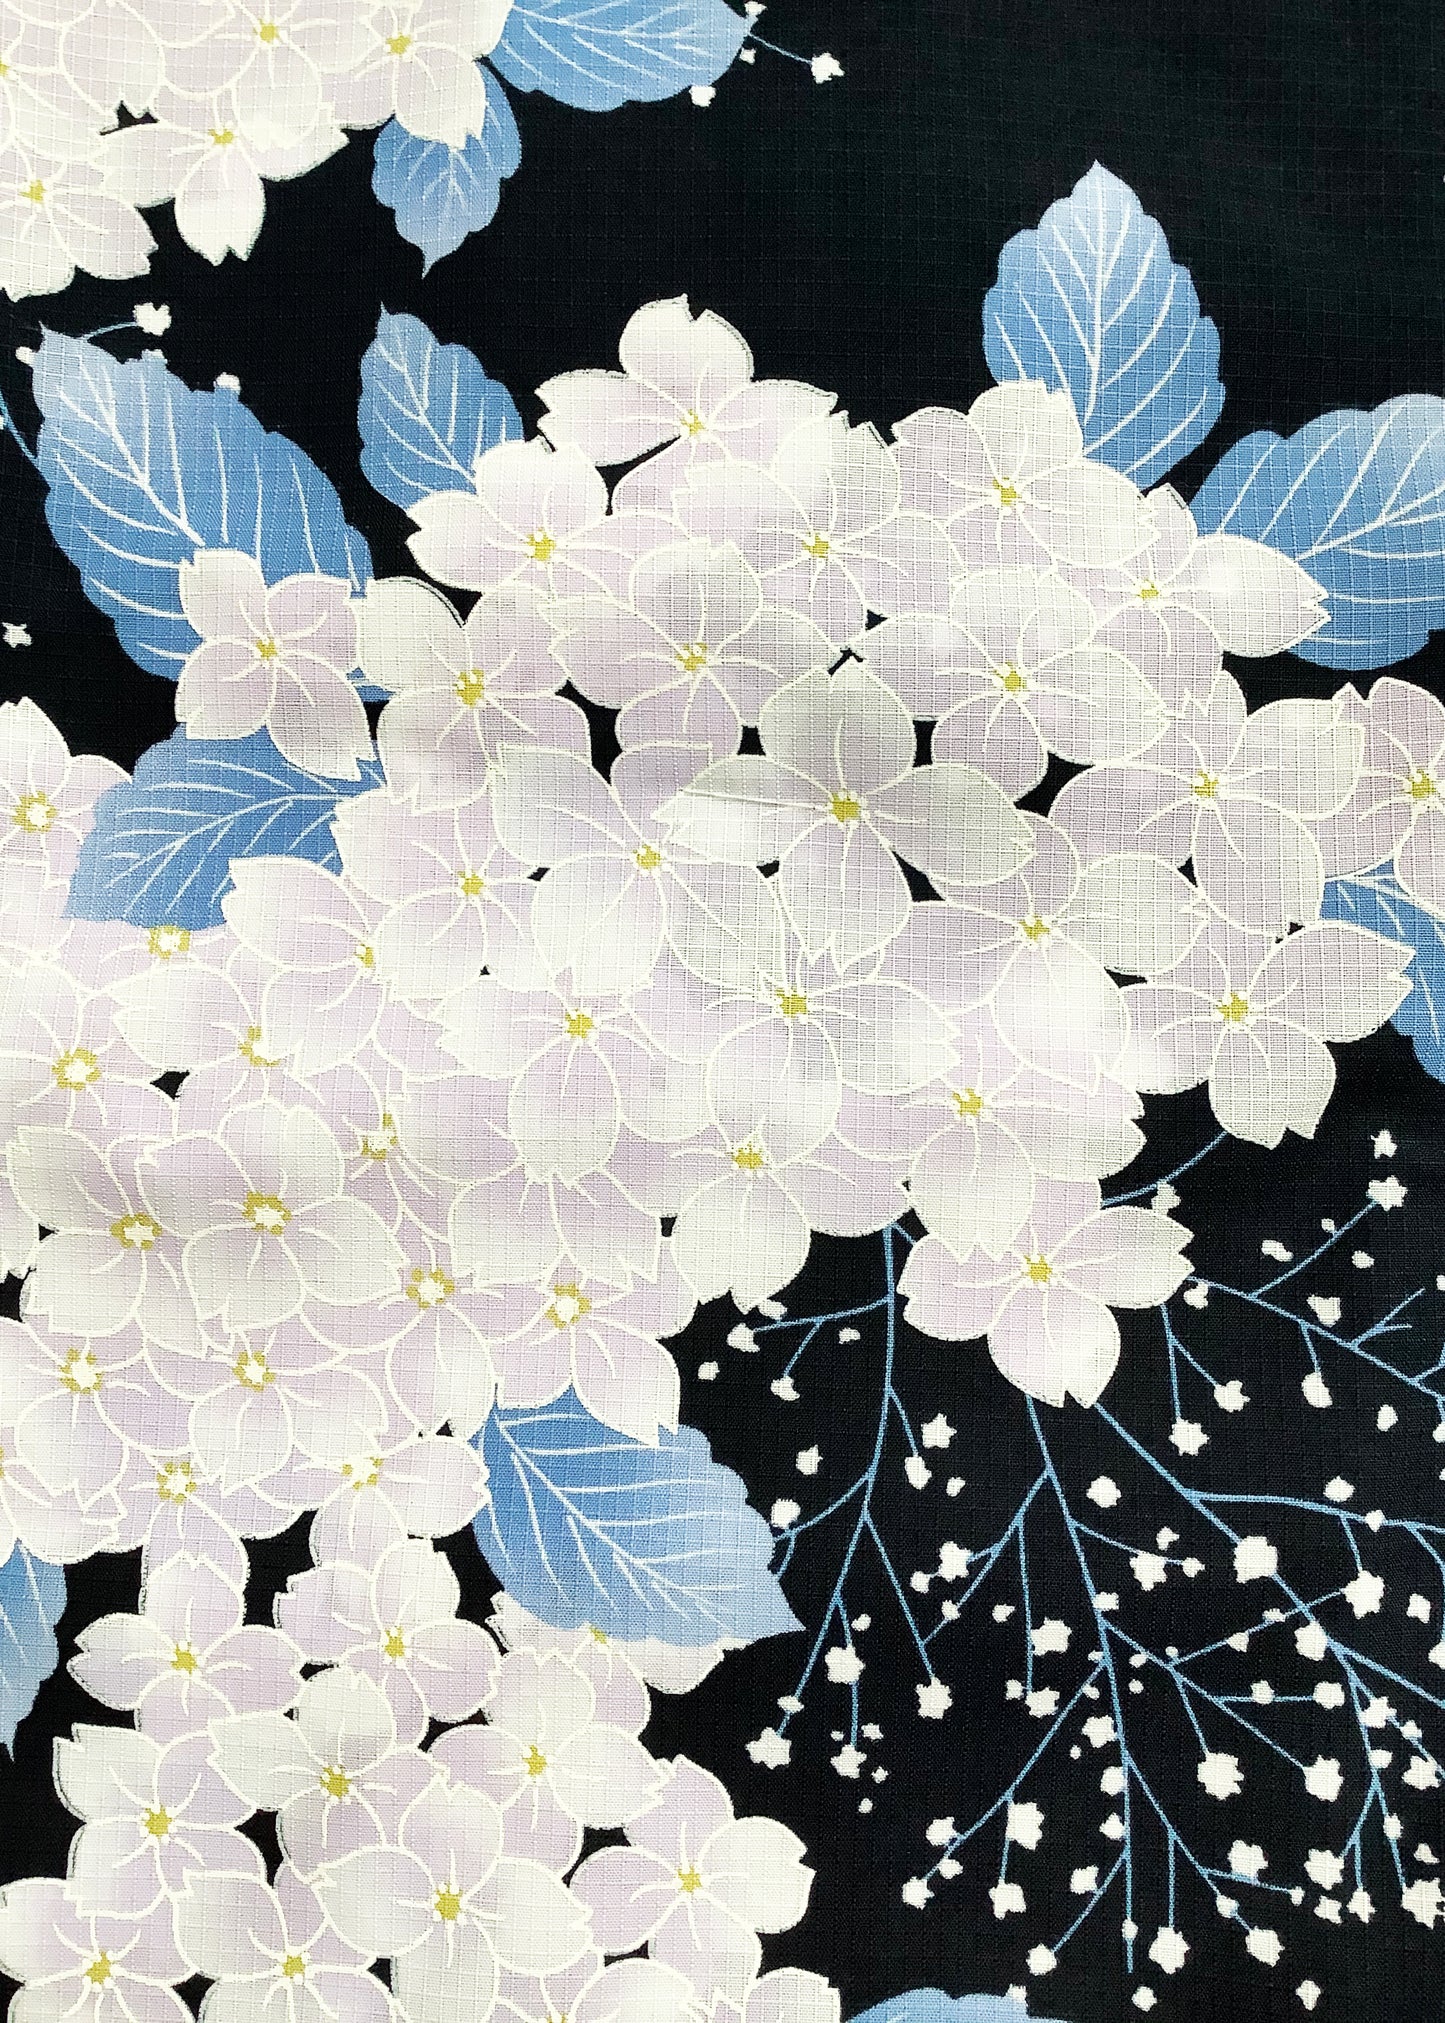 Yukata Kimono - White Hydrangeas in Black